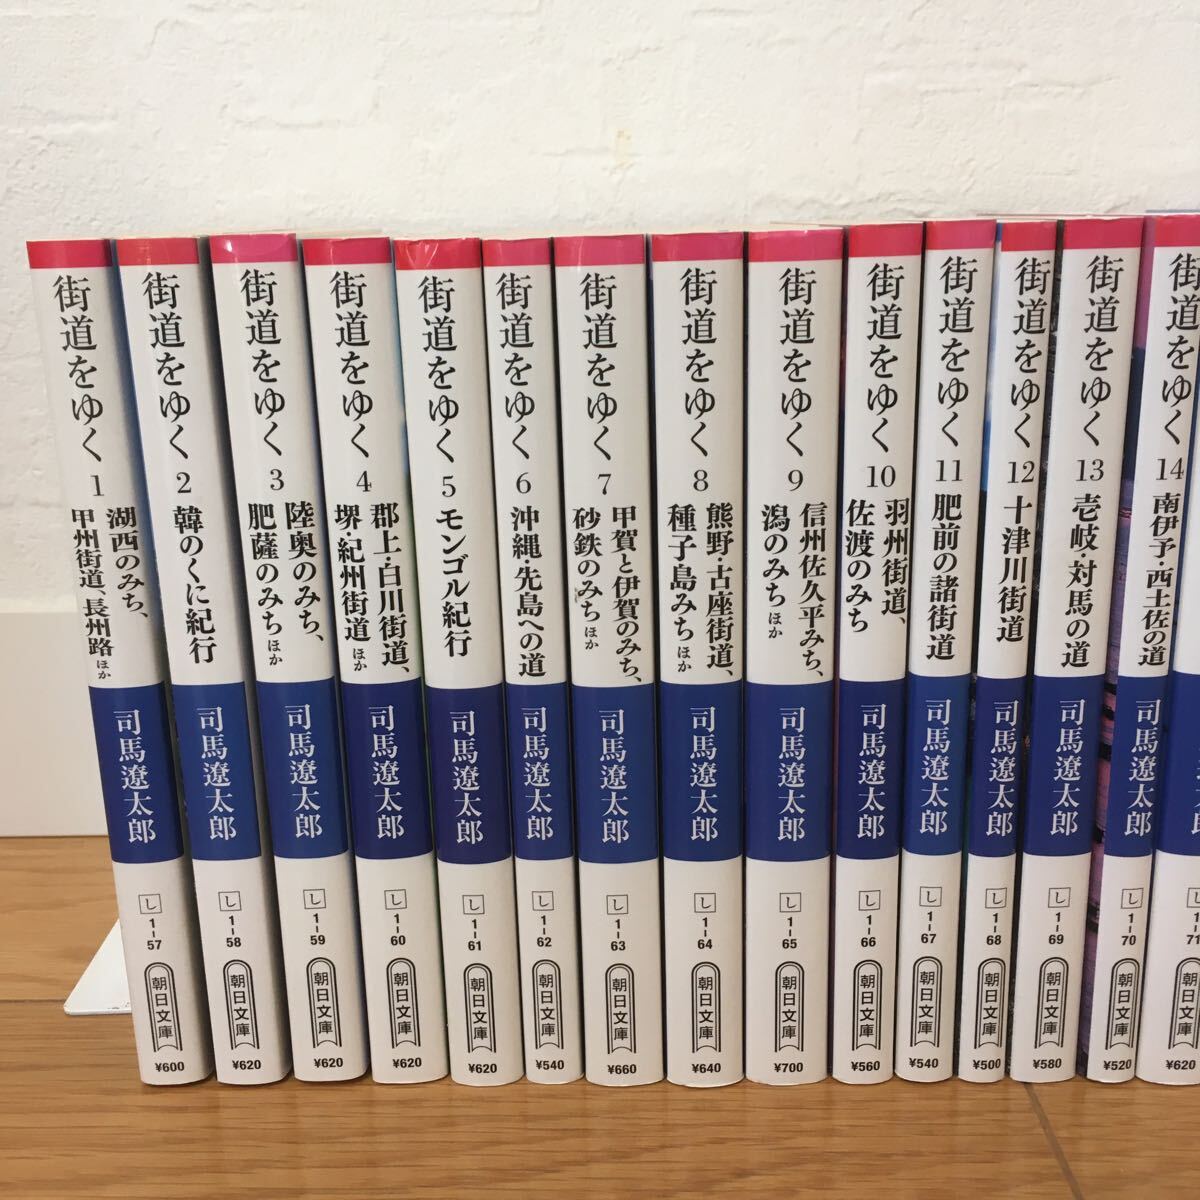  включая доставку * Shiba Ryotaro улица дорога ... библиотека книга@ новый оборудование версия совместно 25 шт. комплект 